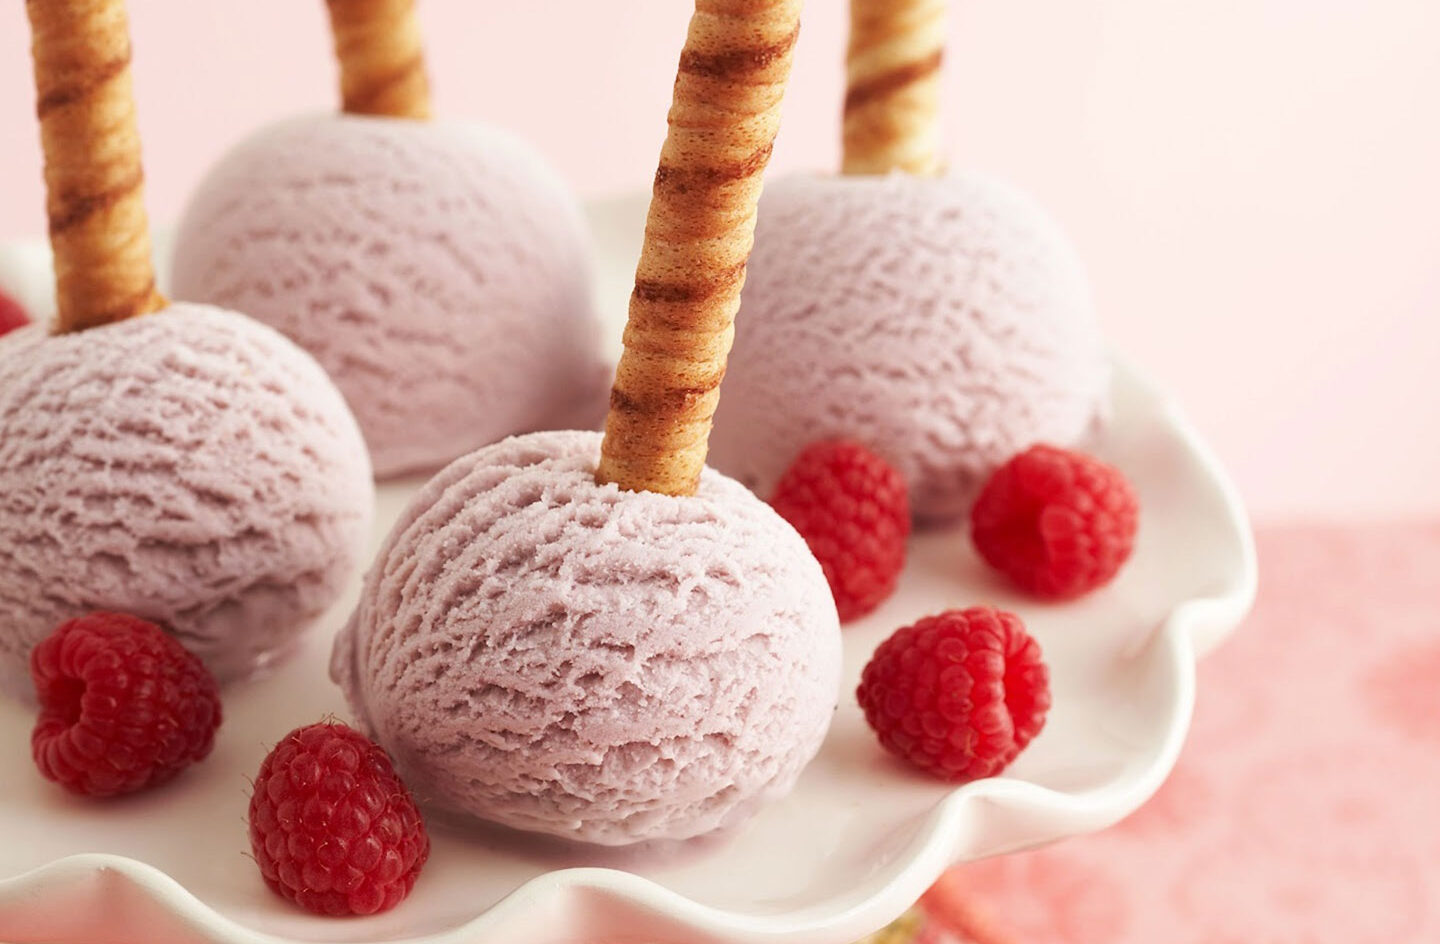 Si has probado 15 sabores, eres un verdadero fanático de los helados